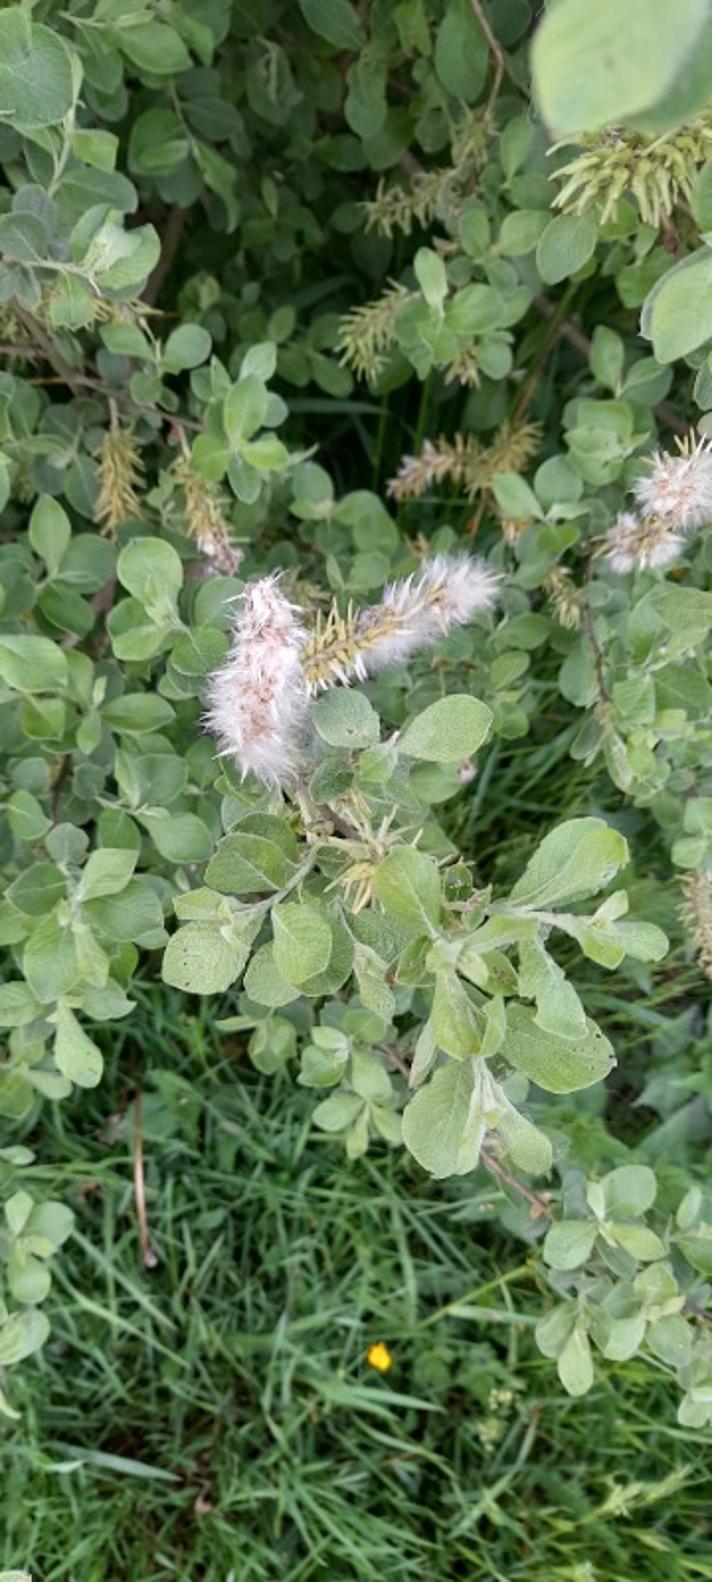 Grå-Pil (Salix cinerea ssp. cinerea)